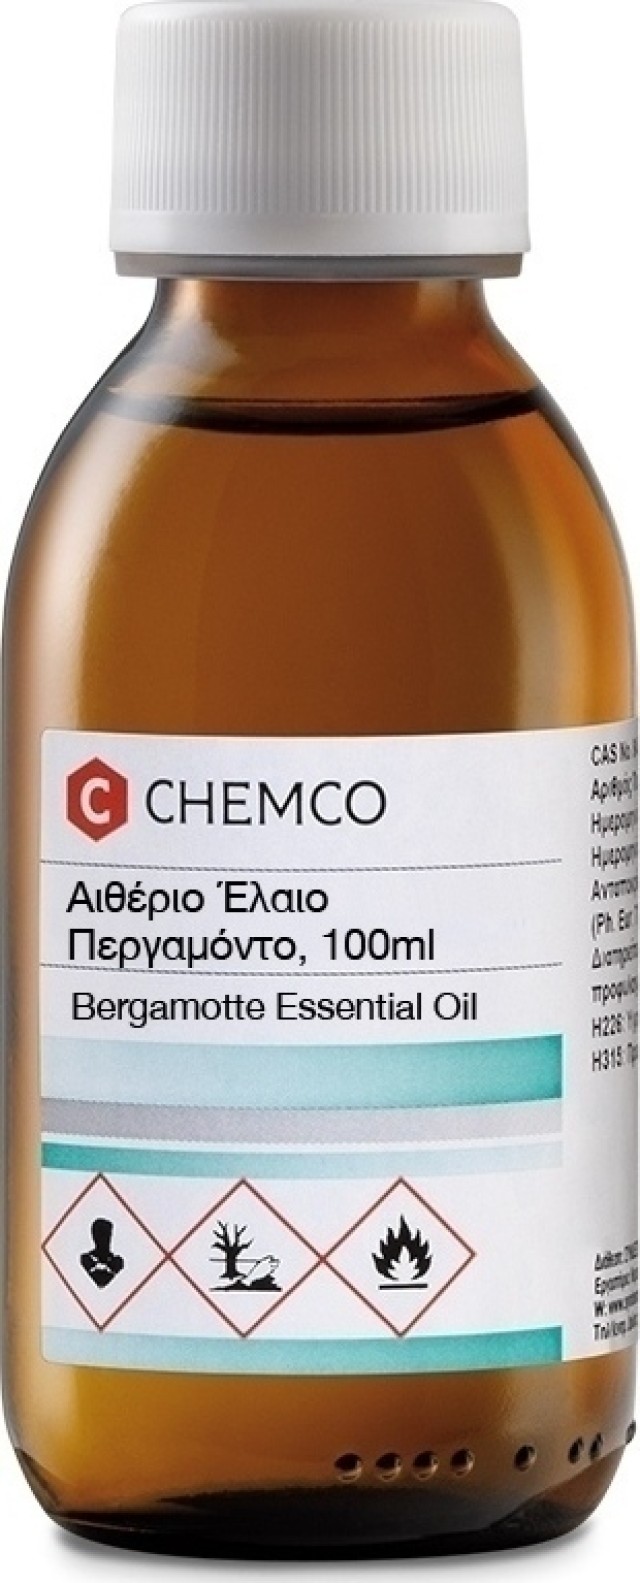 Chemco Αιθέριο Έλαιο Περγαμόντο 100ml